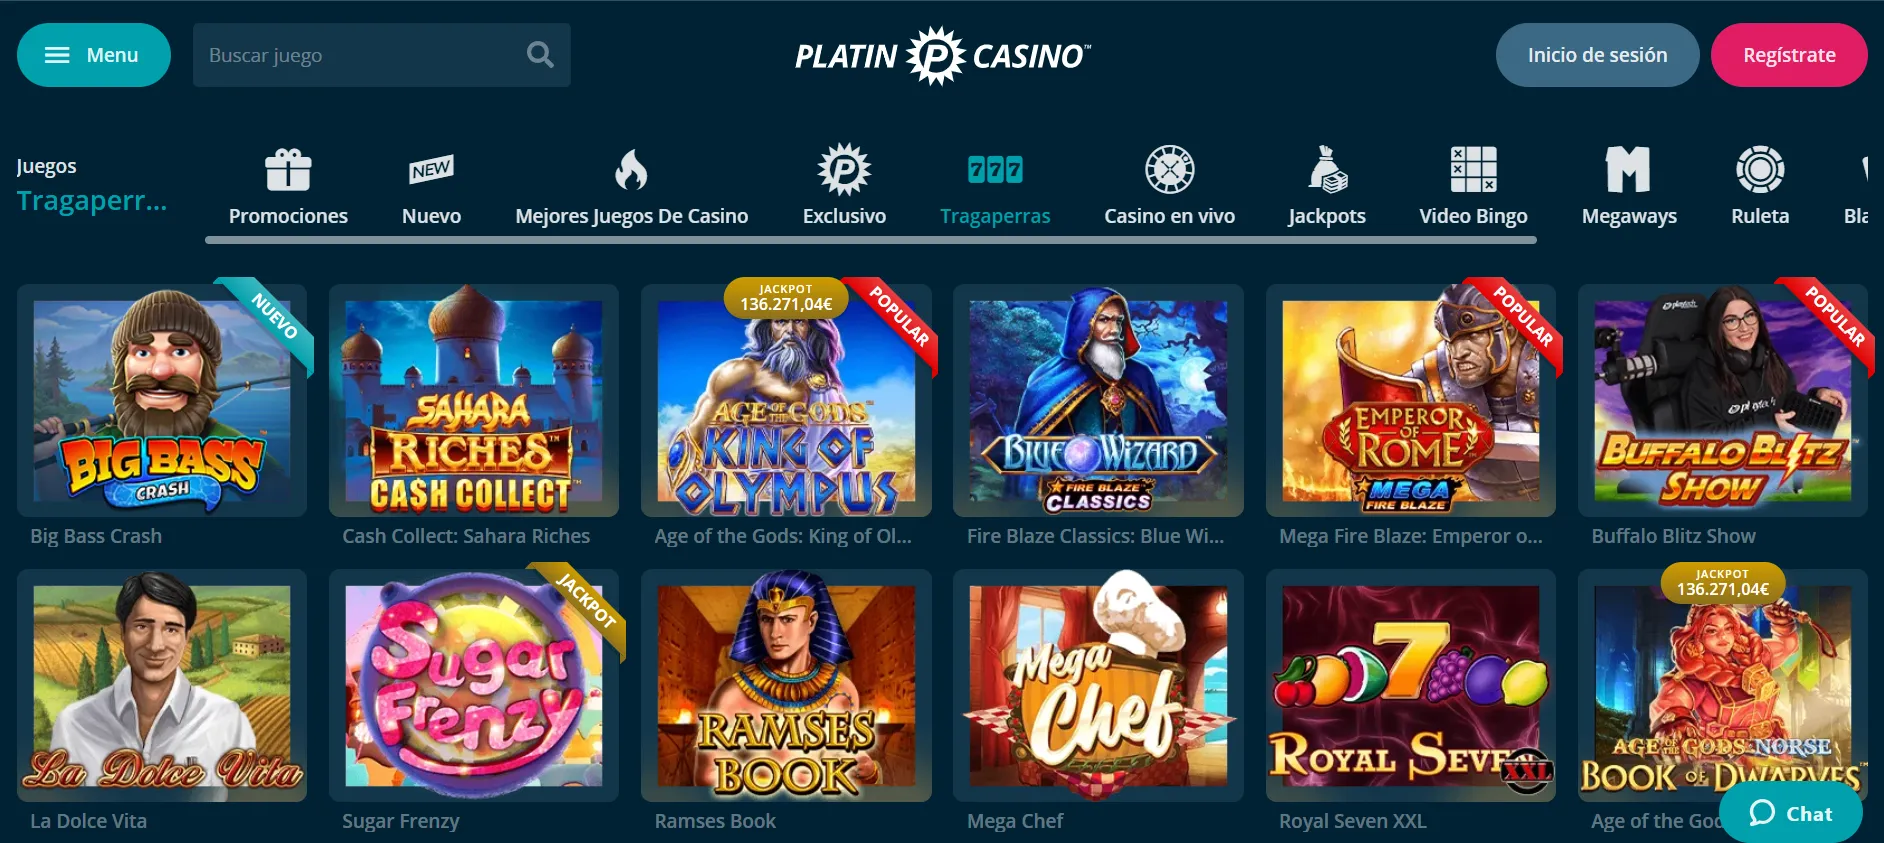 casinos gratis españa juegos